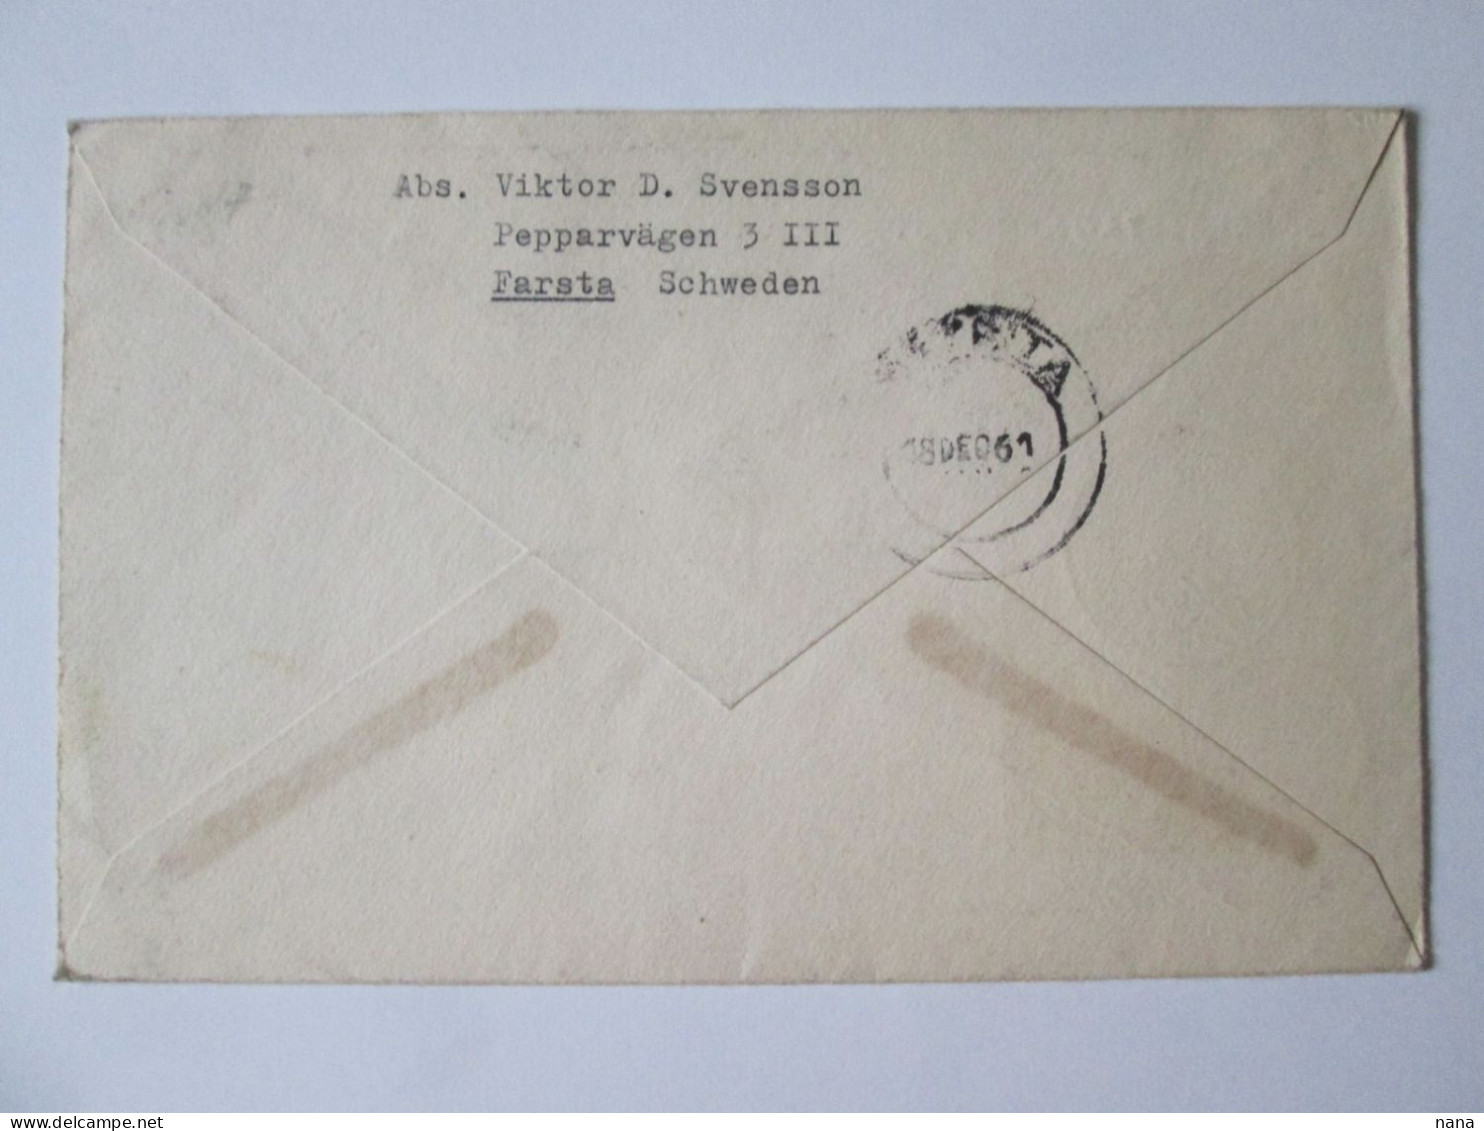 Sweden/Stockholm Enveloppe Recommandee Nobel 1961-Sweden/Stockholm Envelope Registered Nobel 1961 - Brieven En Documenten